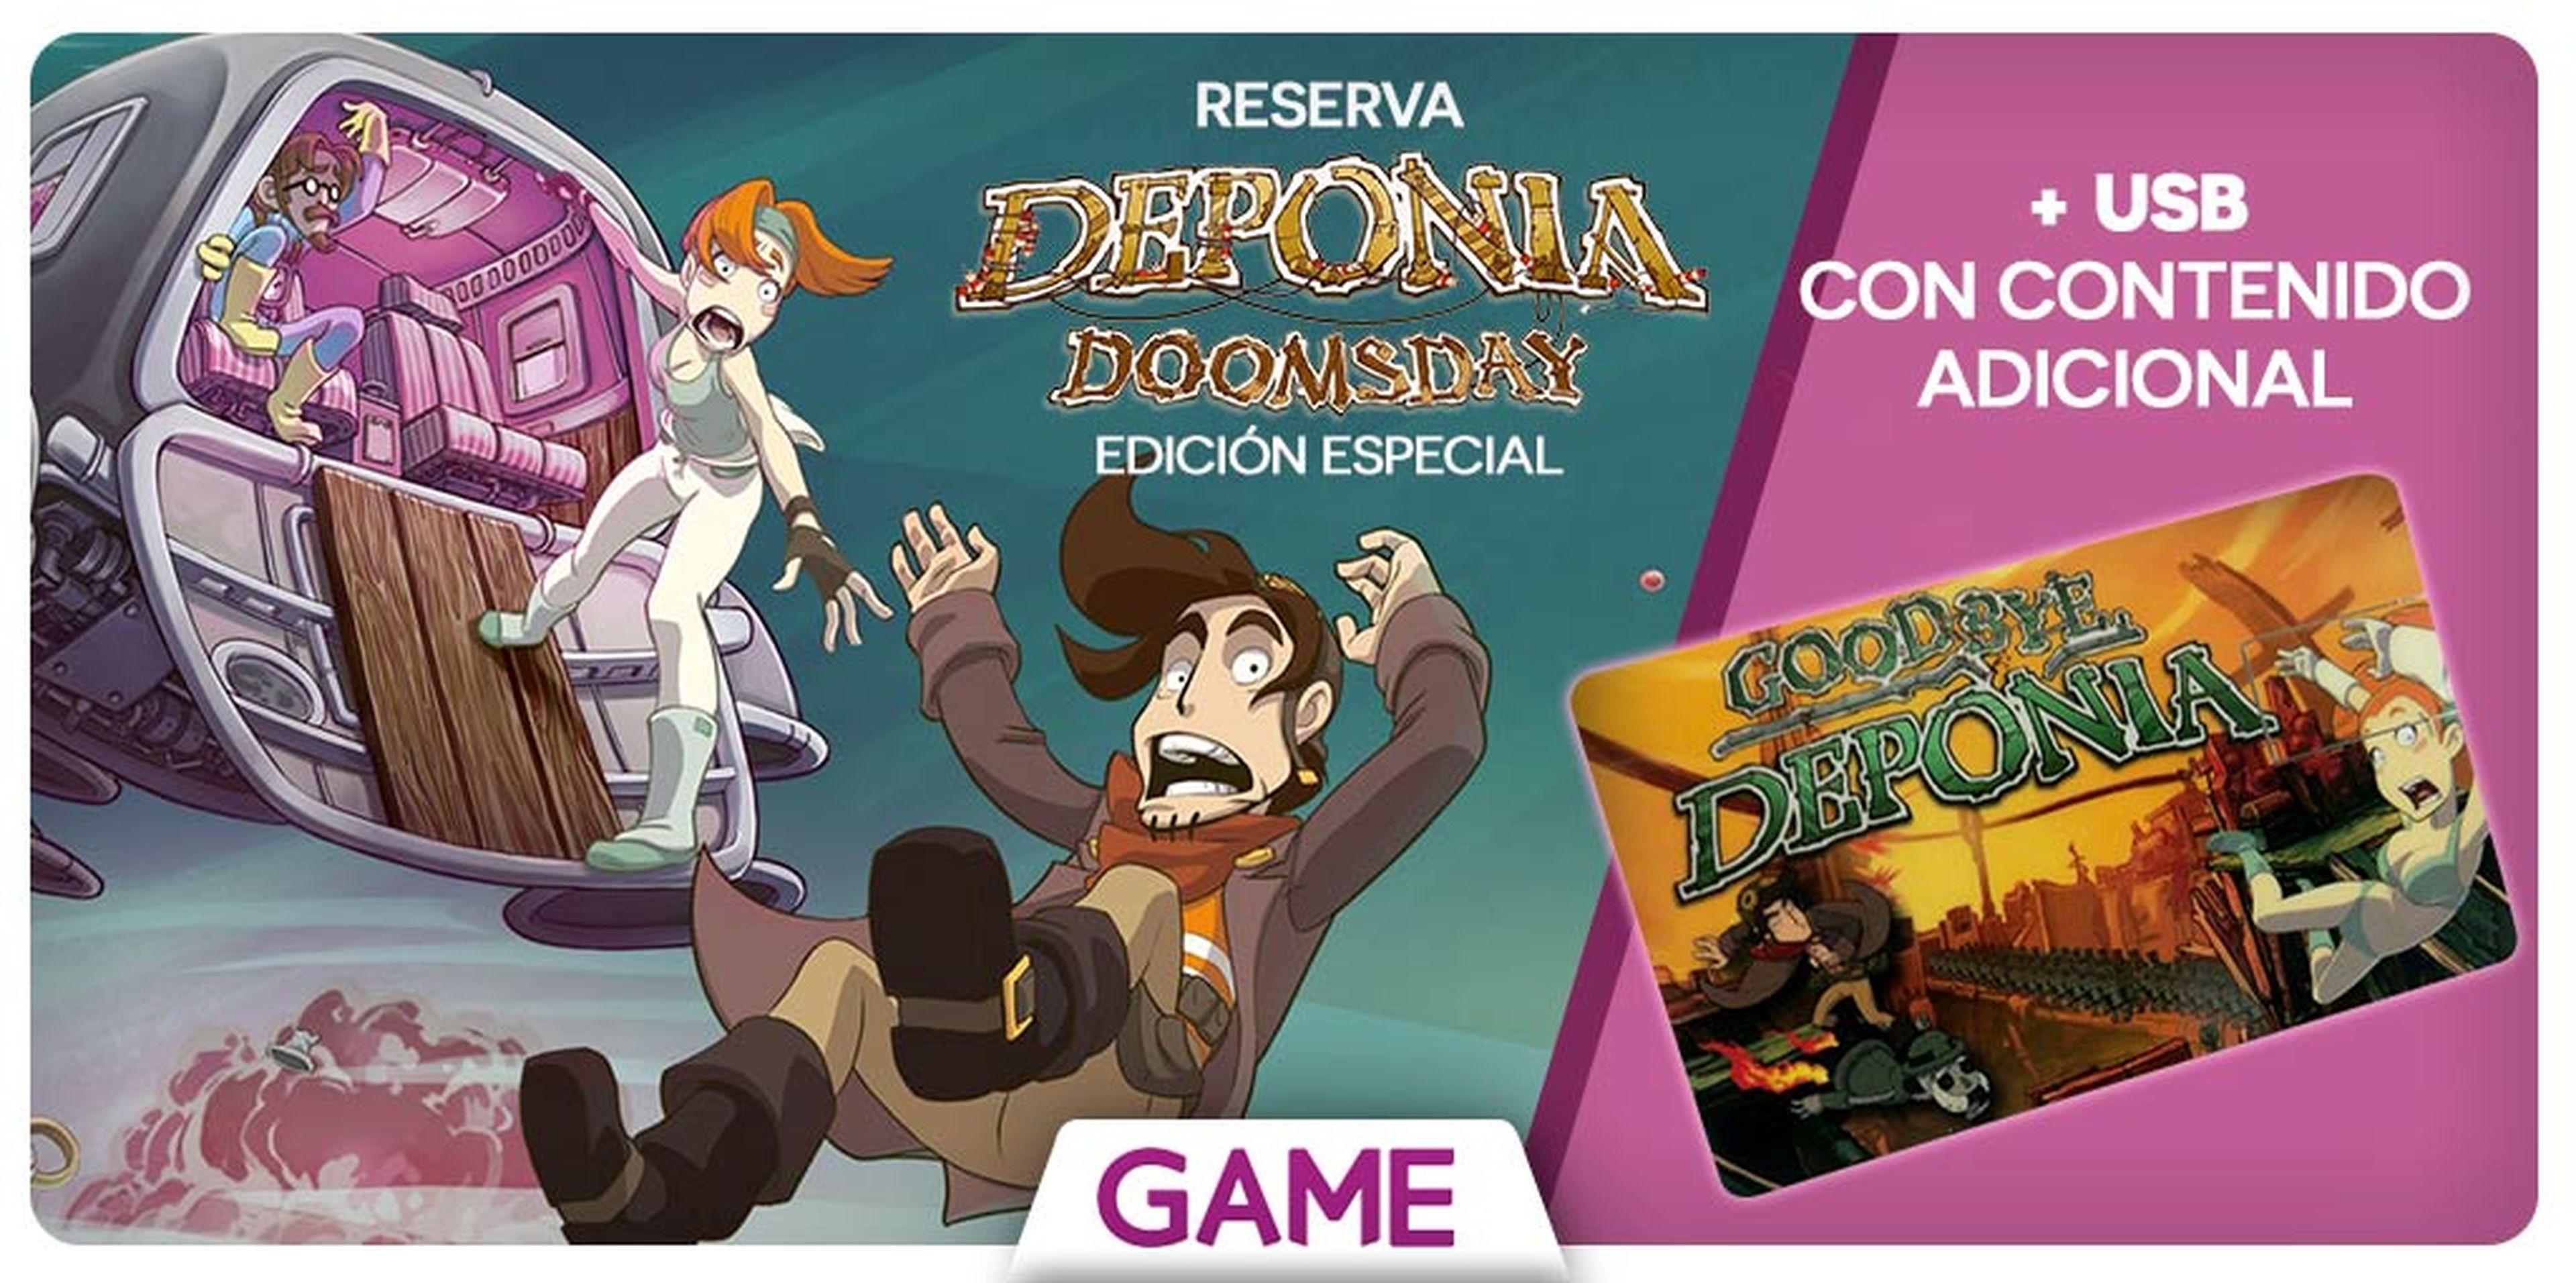 Deponia Doomsday - Edición especial y regalo con la reserva en GAME